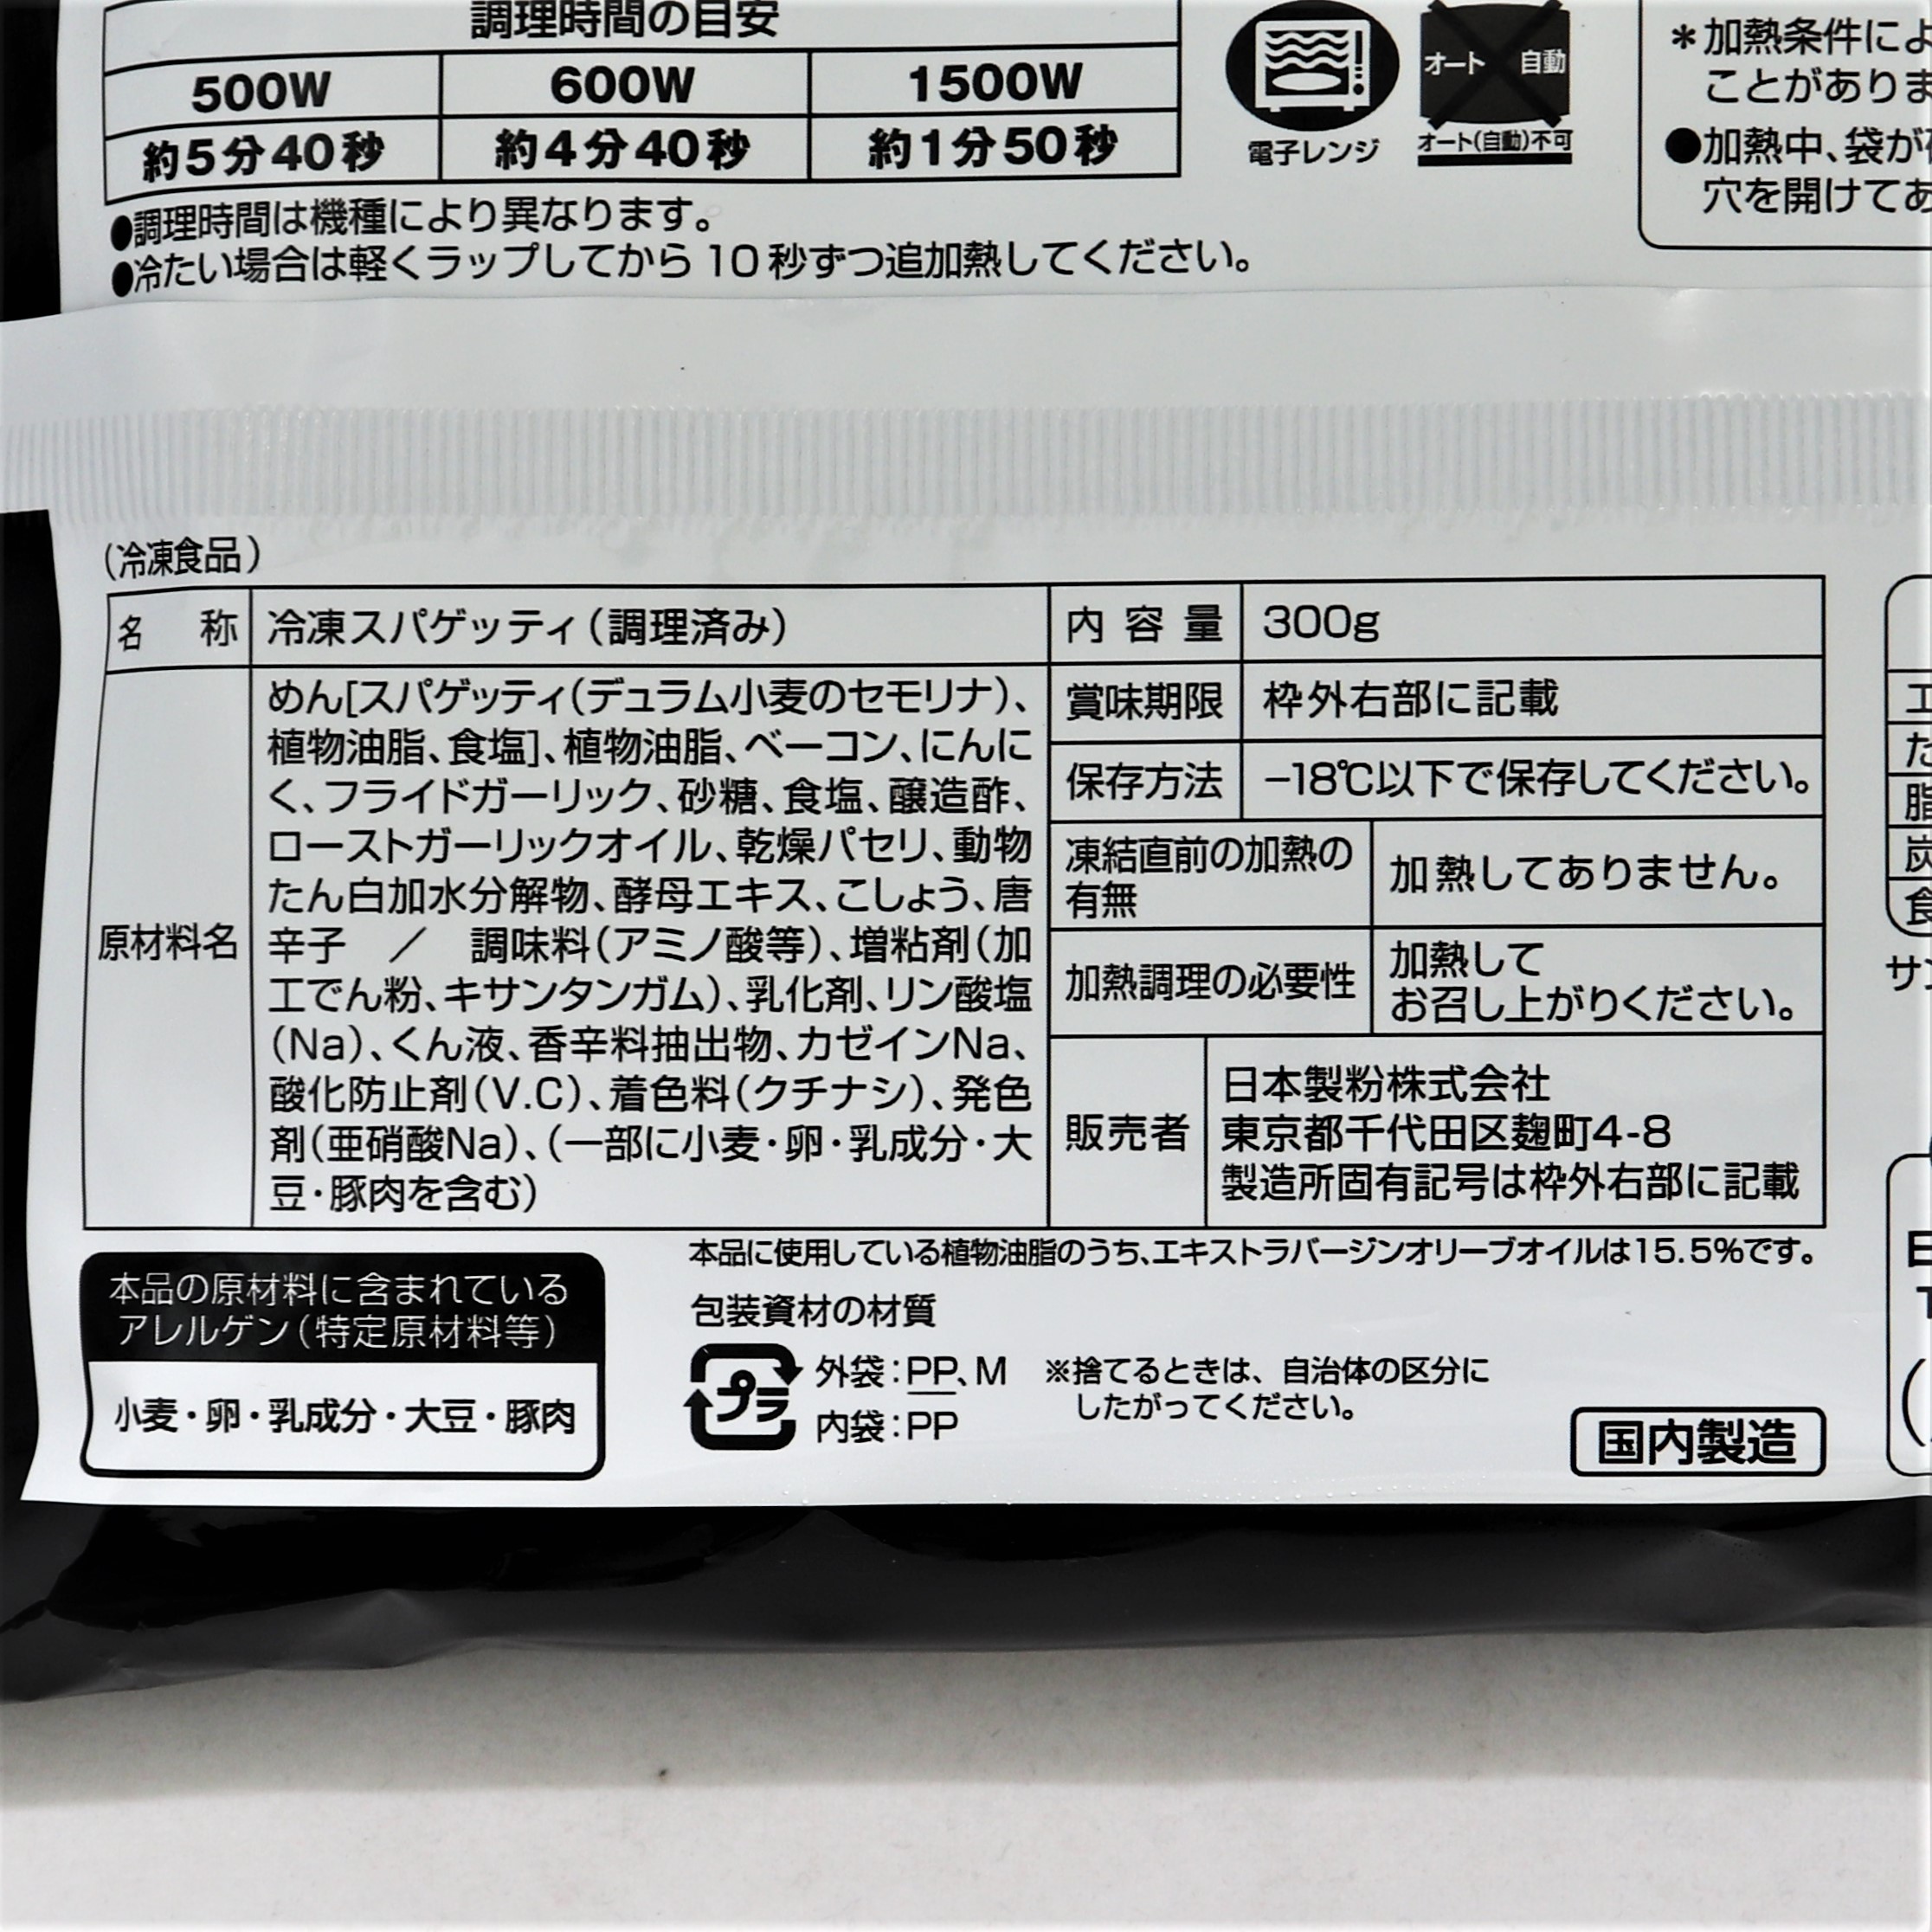 【業務用】ニップン オーマイプレストペペロンチーノスパゲティ 300g